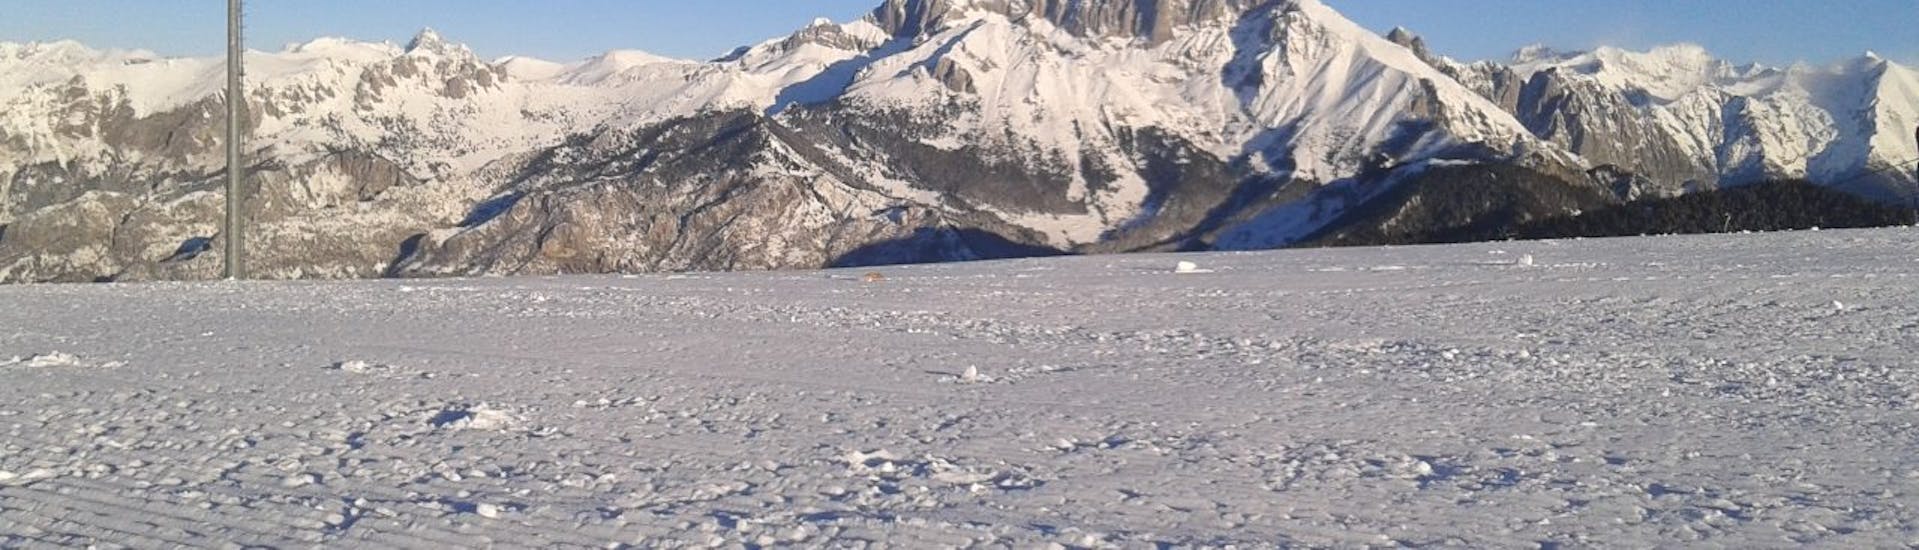 Montagne coperte di neve nel Monte Pora. Ottimo posto per una delle lezioni di snowboard per bambini e adulti di tutti i livelli.